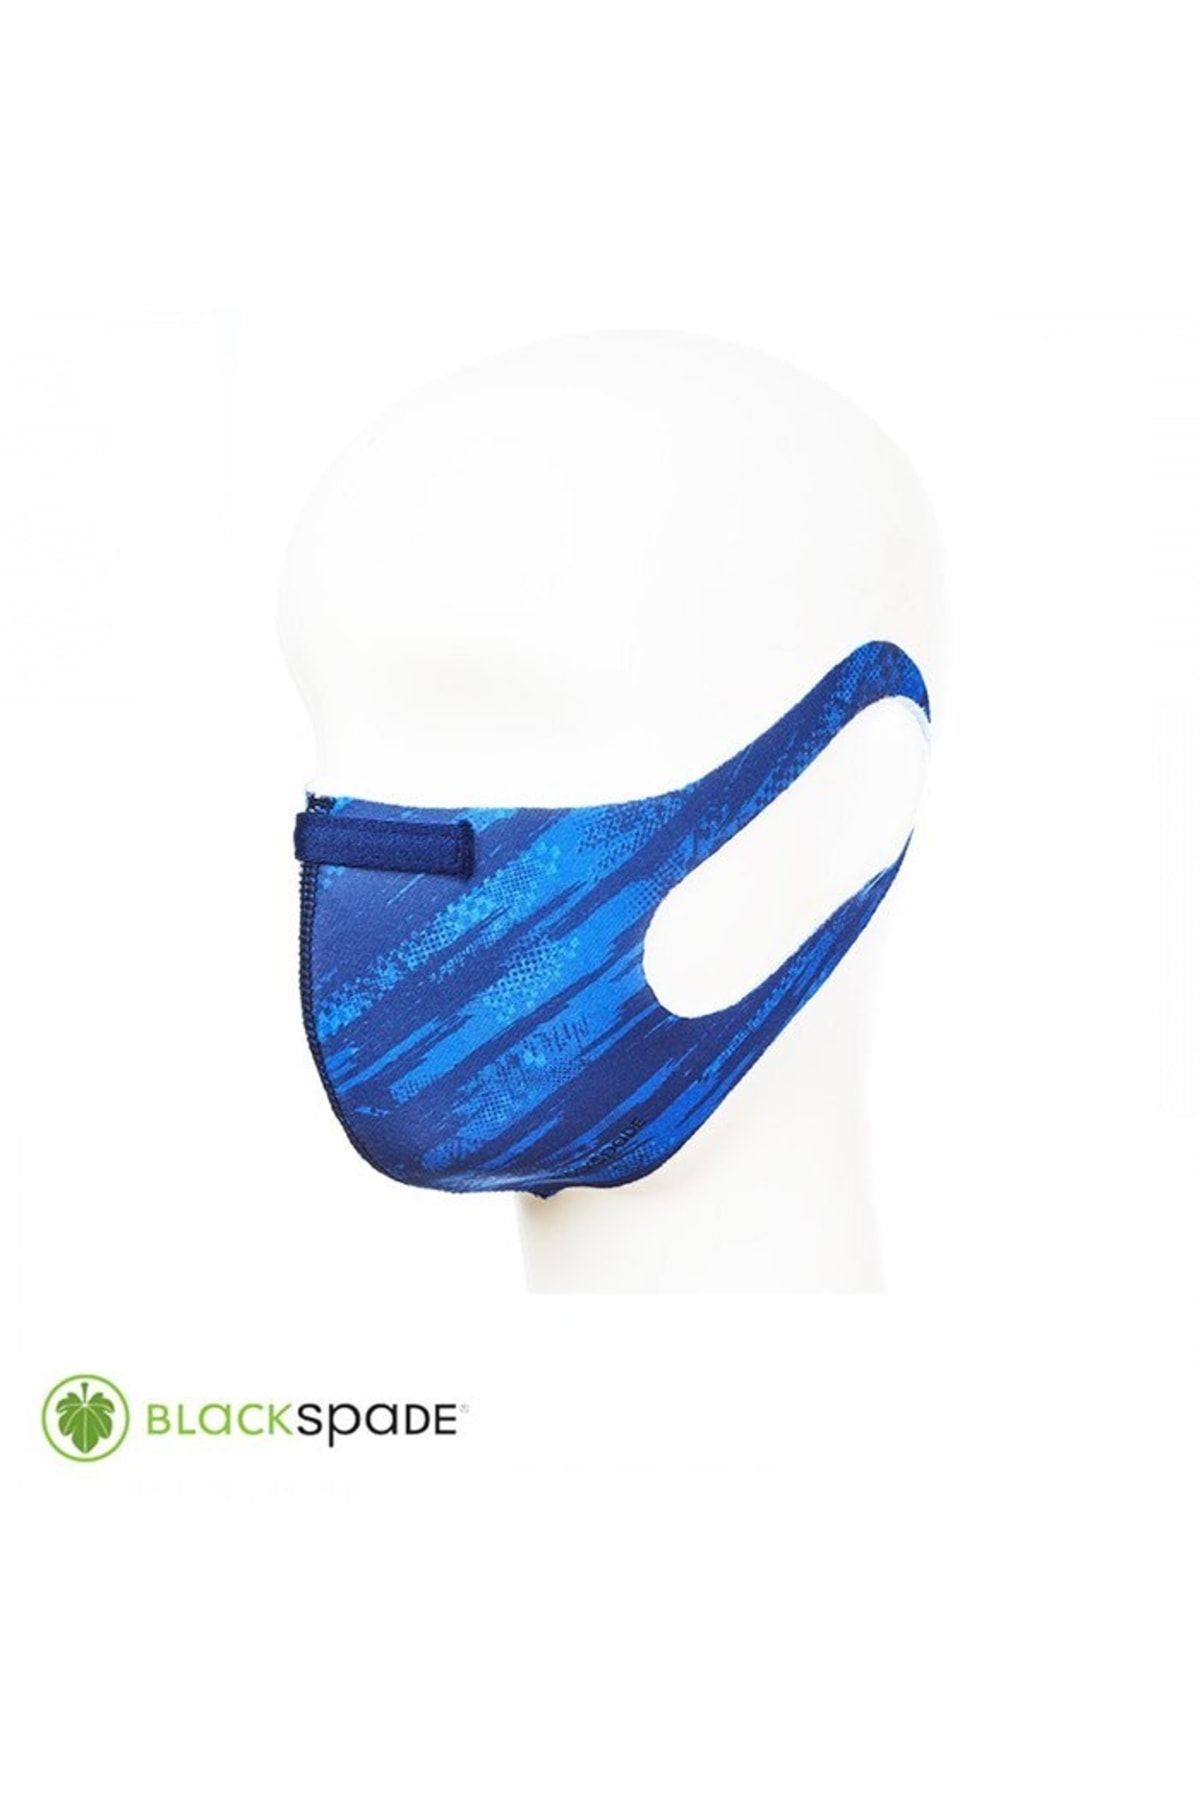 Blackspade Unisex Koruyucu Maske Yarış Desen S